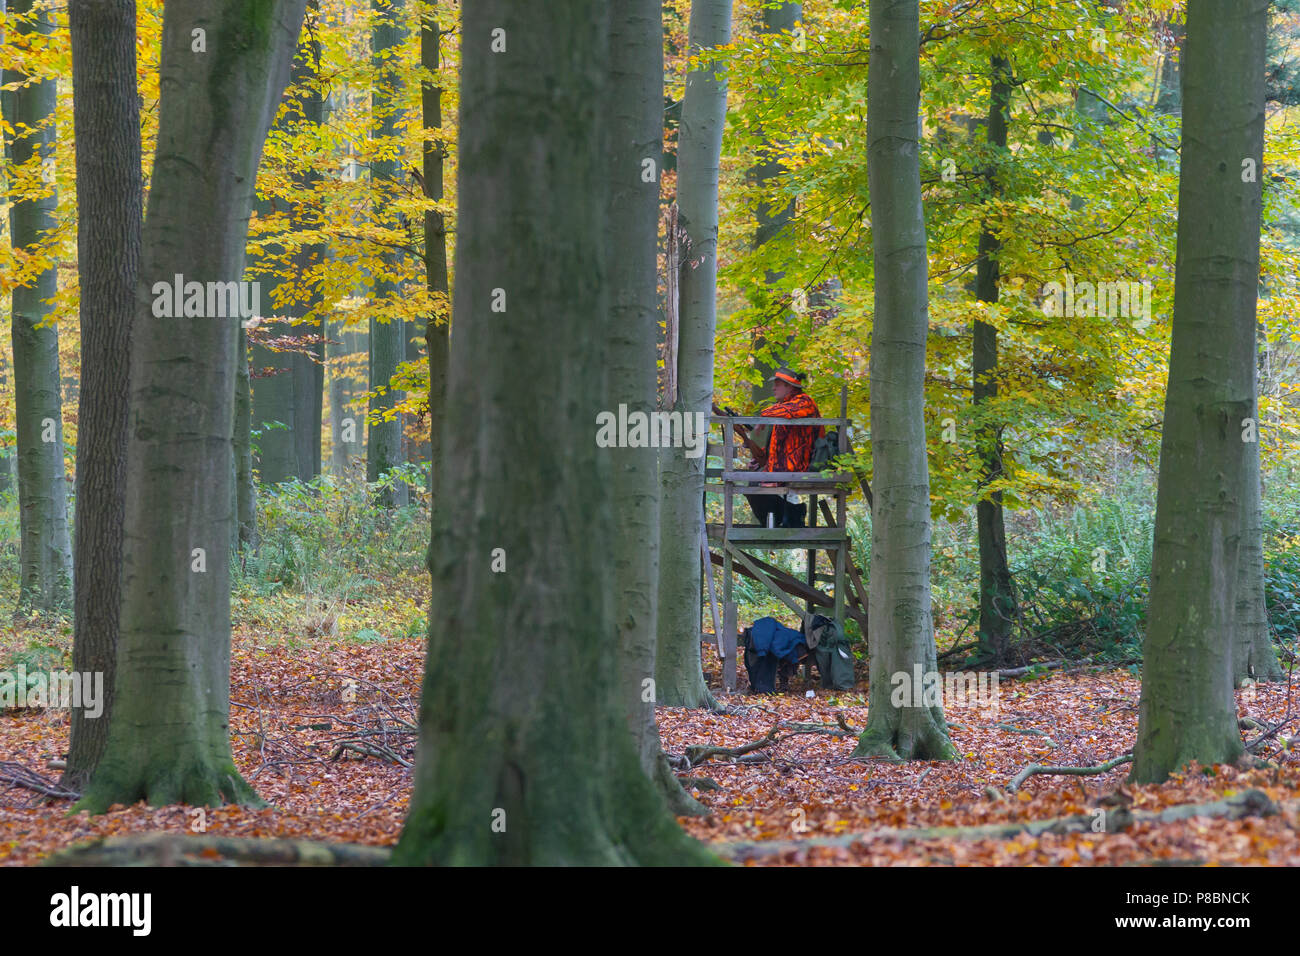 Großwildjäger gekleidet in Orange warten im Ansitz, Reh im Wald während der Jagdsaison im Herbst zu schießen Stockfoto